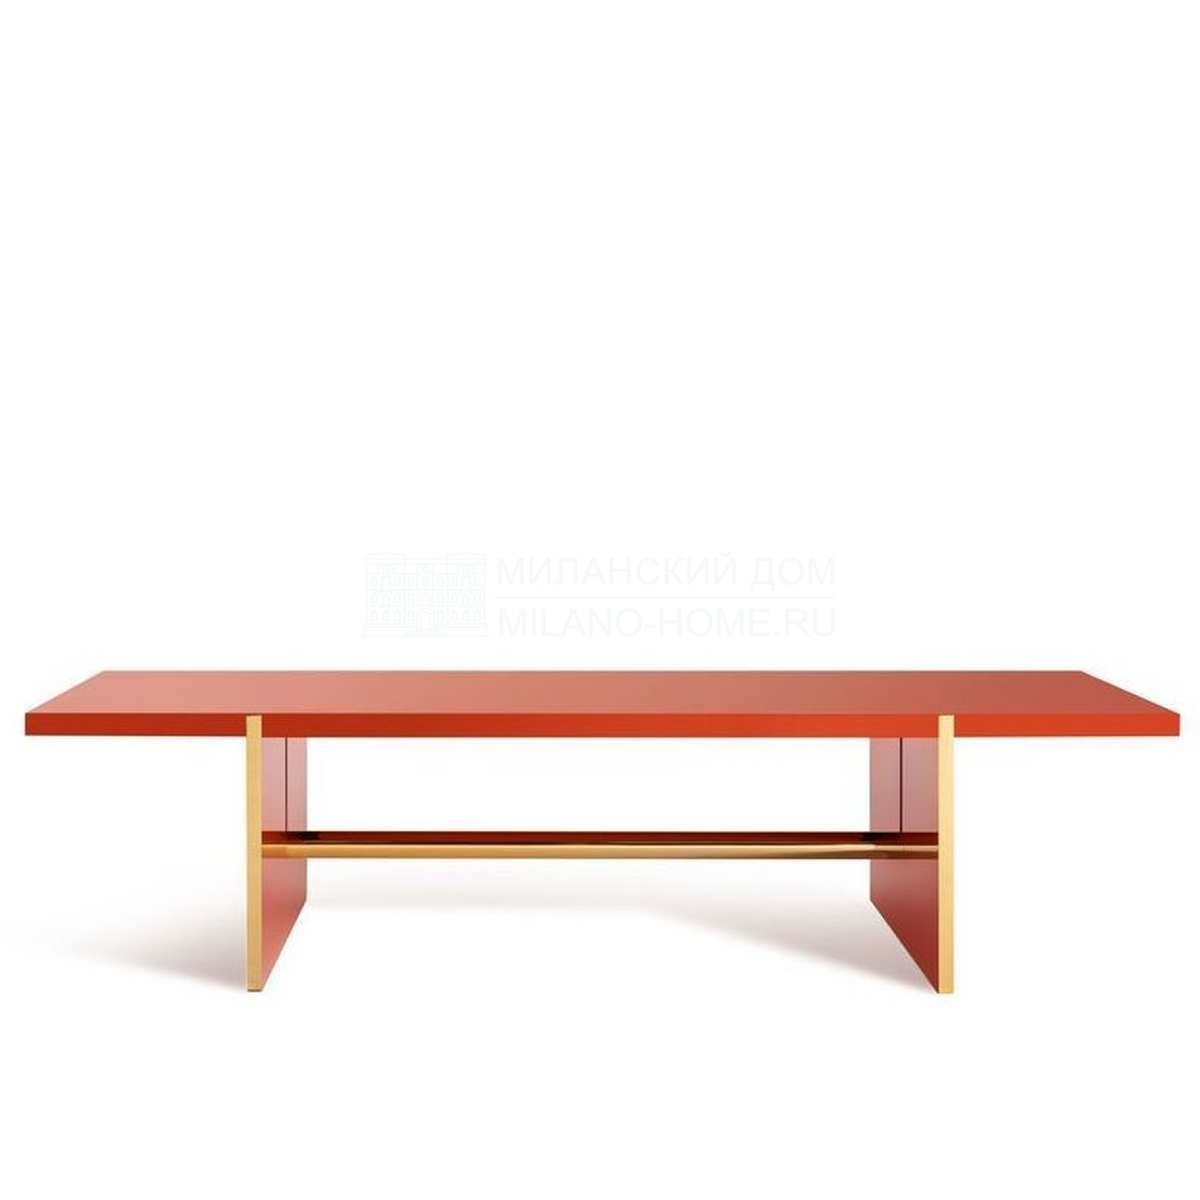 Обеденный стол Icaro dining table из Италии фабрики FENDI Casa